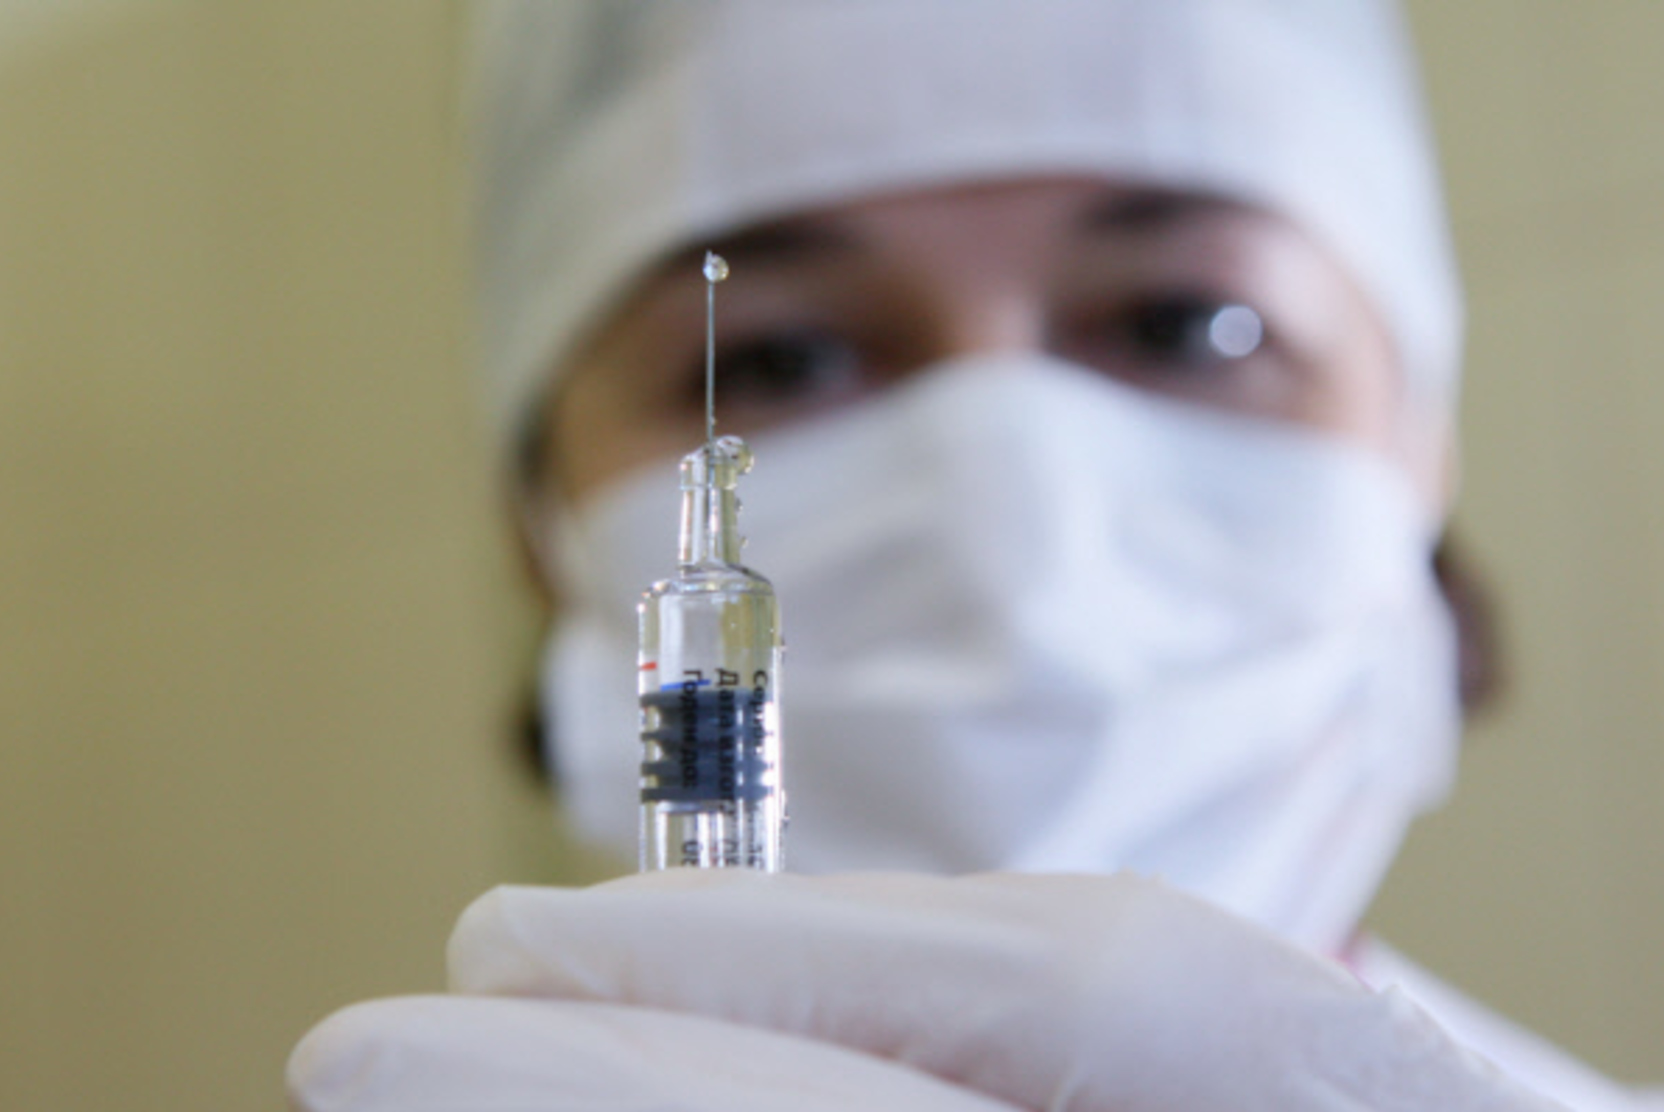 Белоруссия может начать выпуск российской вакцины от COVID-19 в начале 2021 года